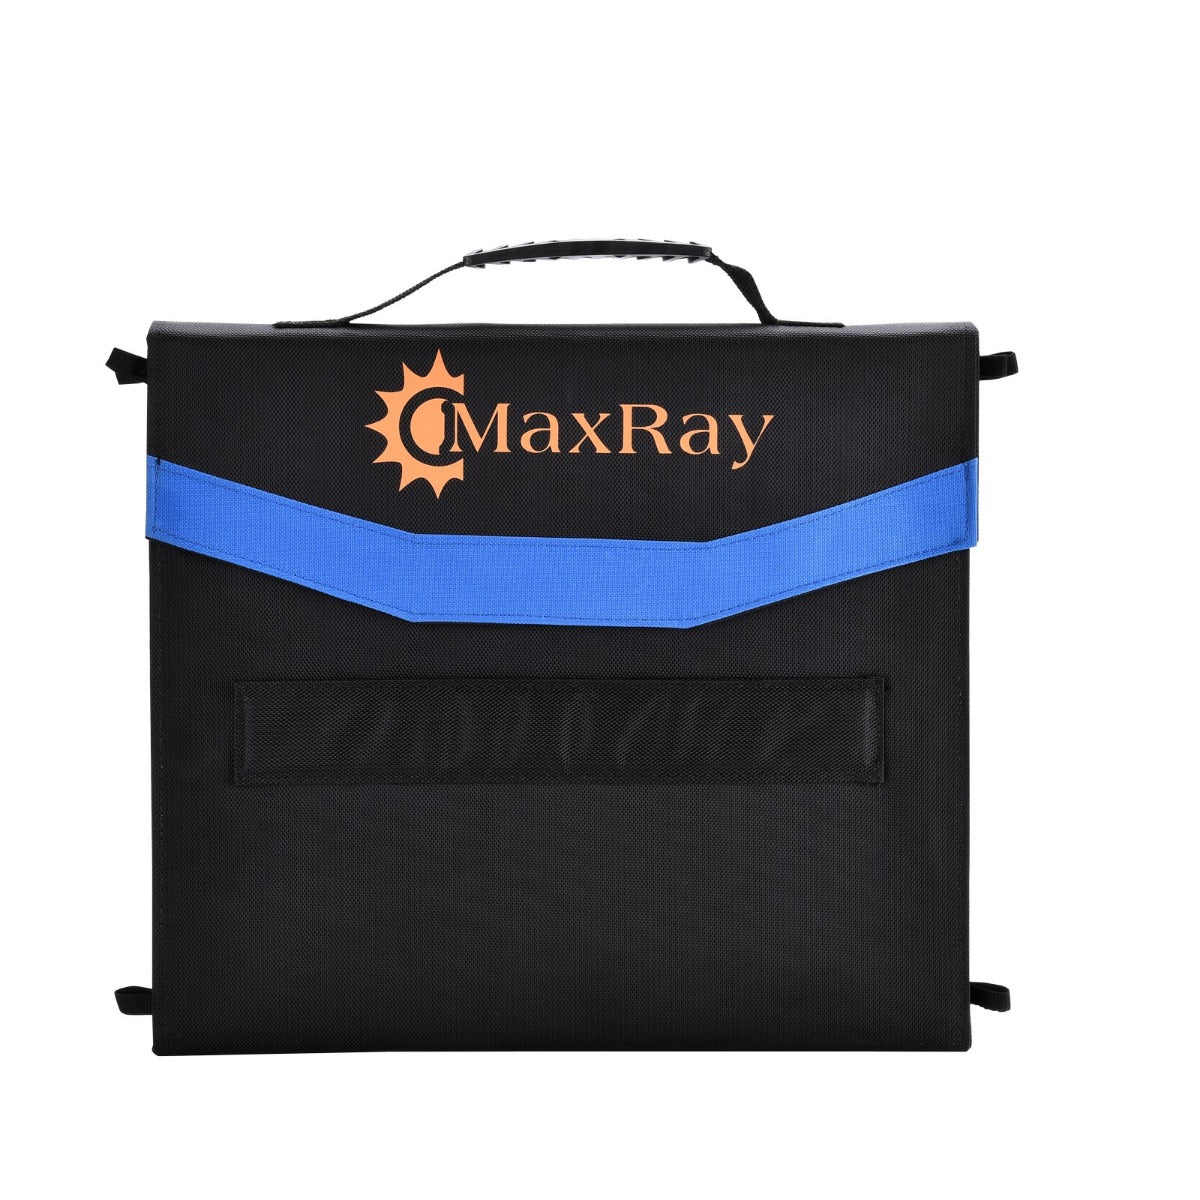 Maxray 160W 12V Folding Solar Panel Blanket Solar Mat Kit